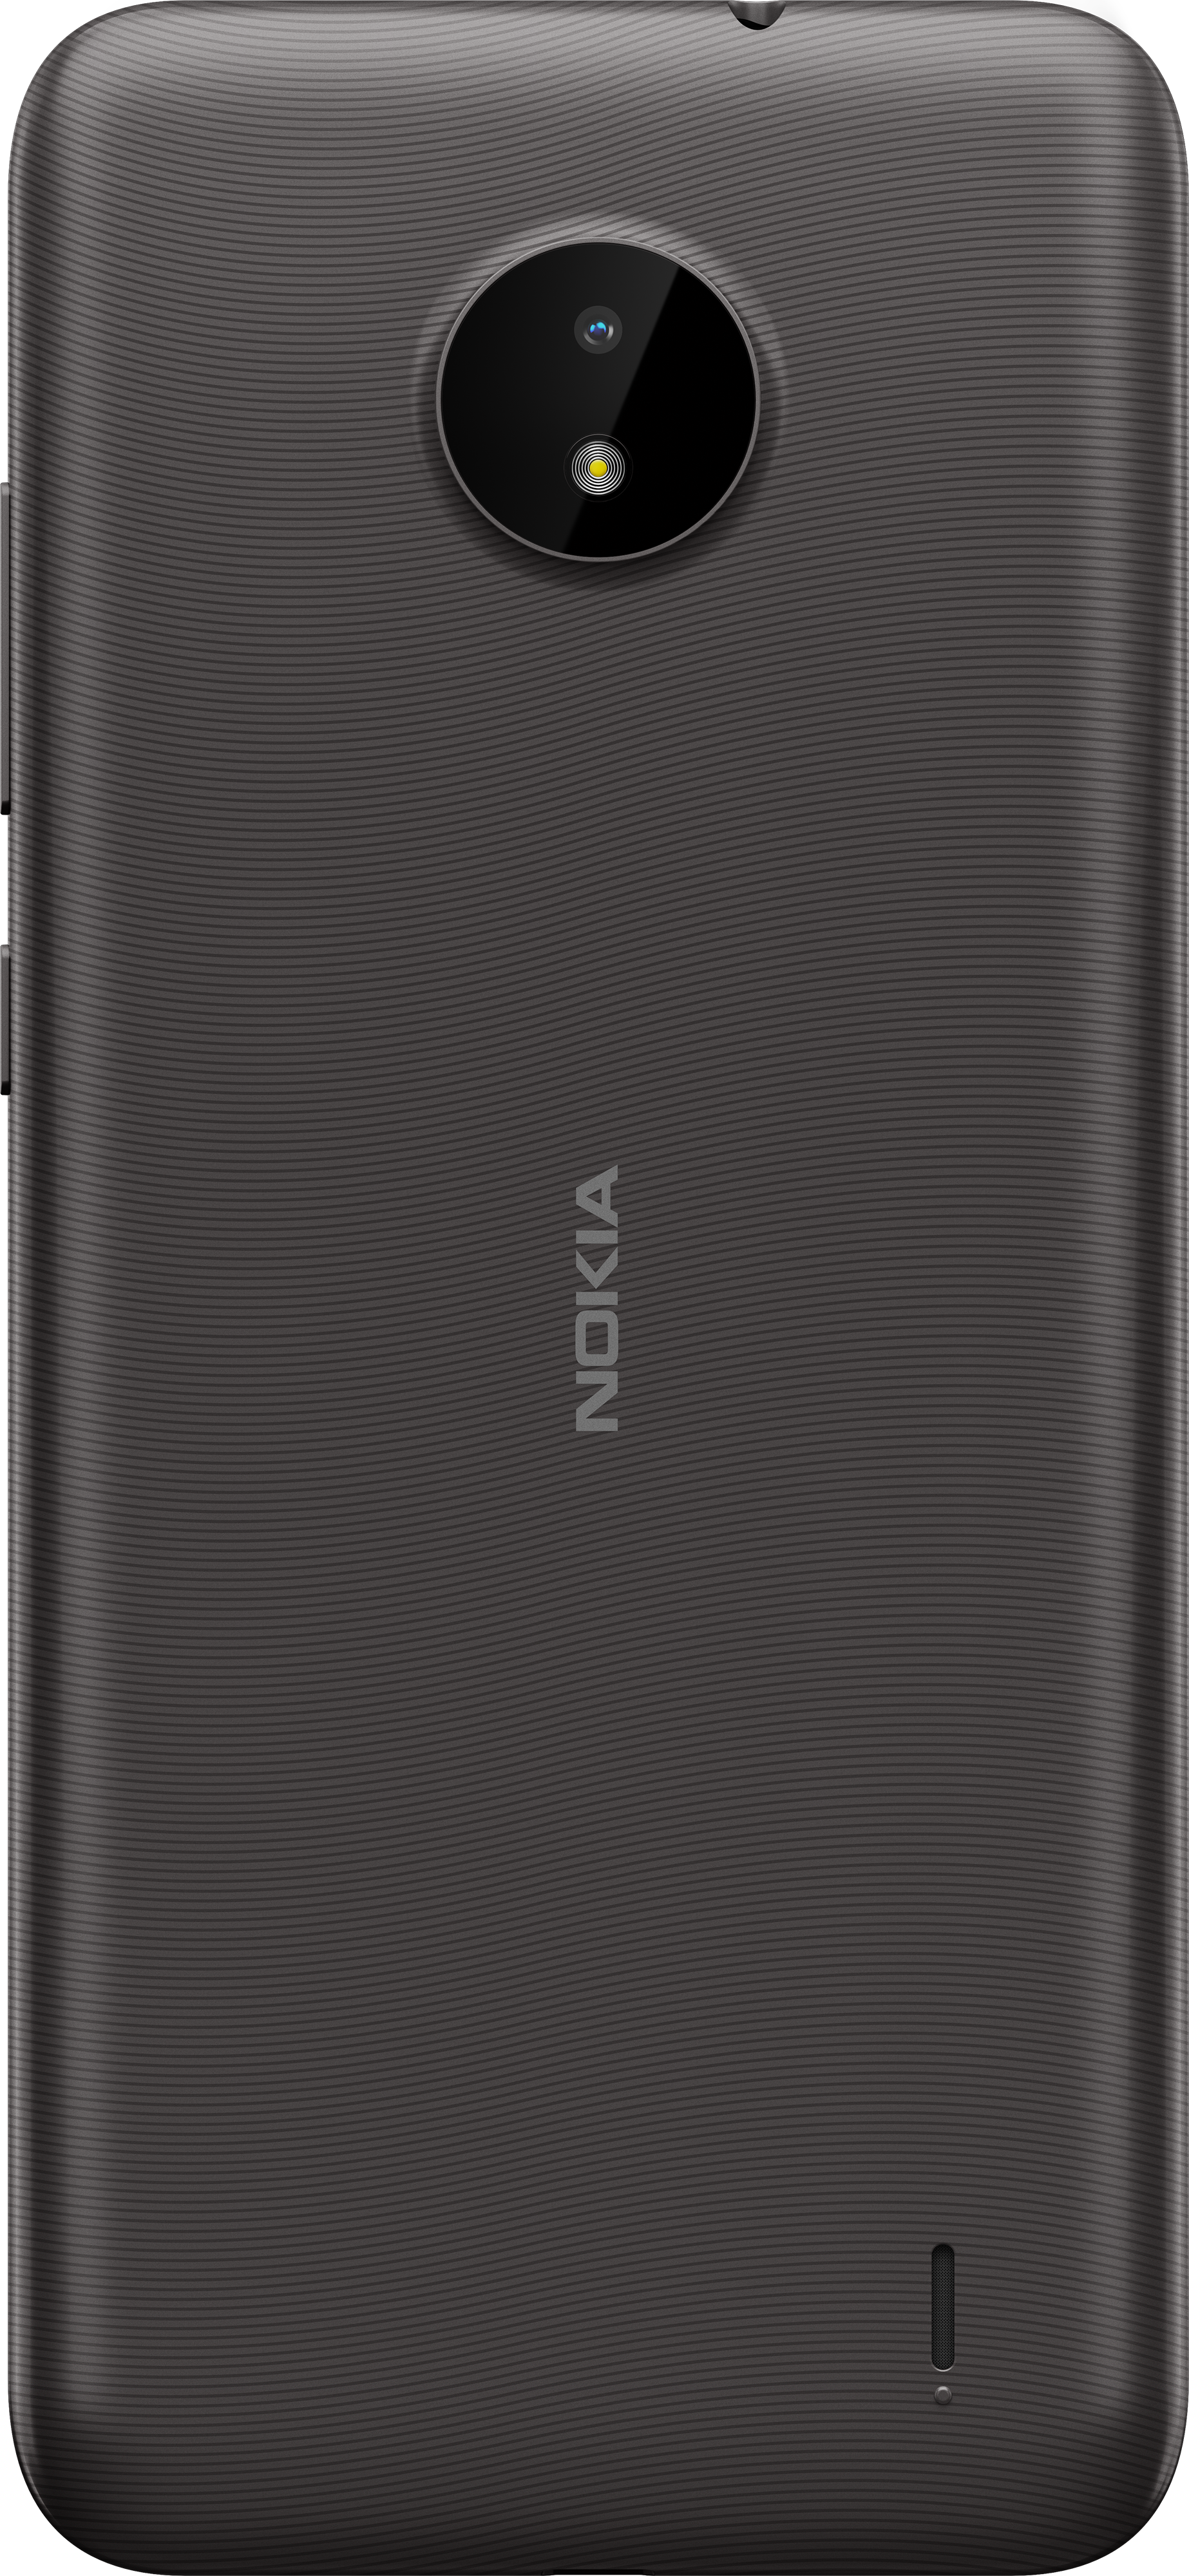 Nokia C10 Smartphone in kenya